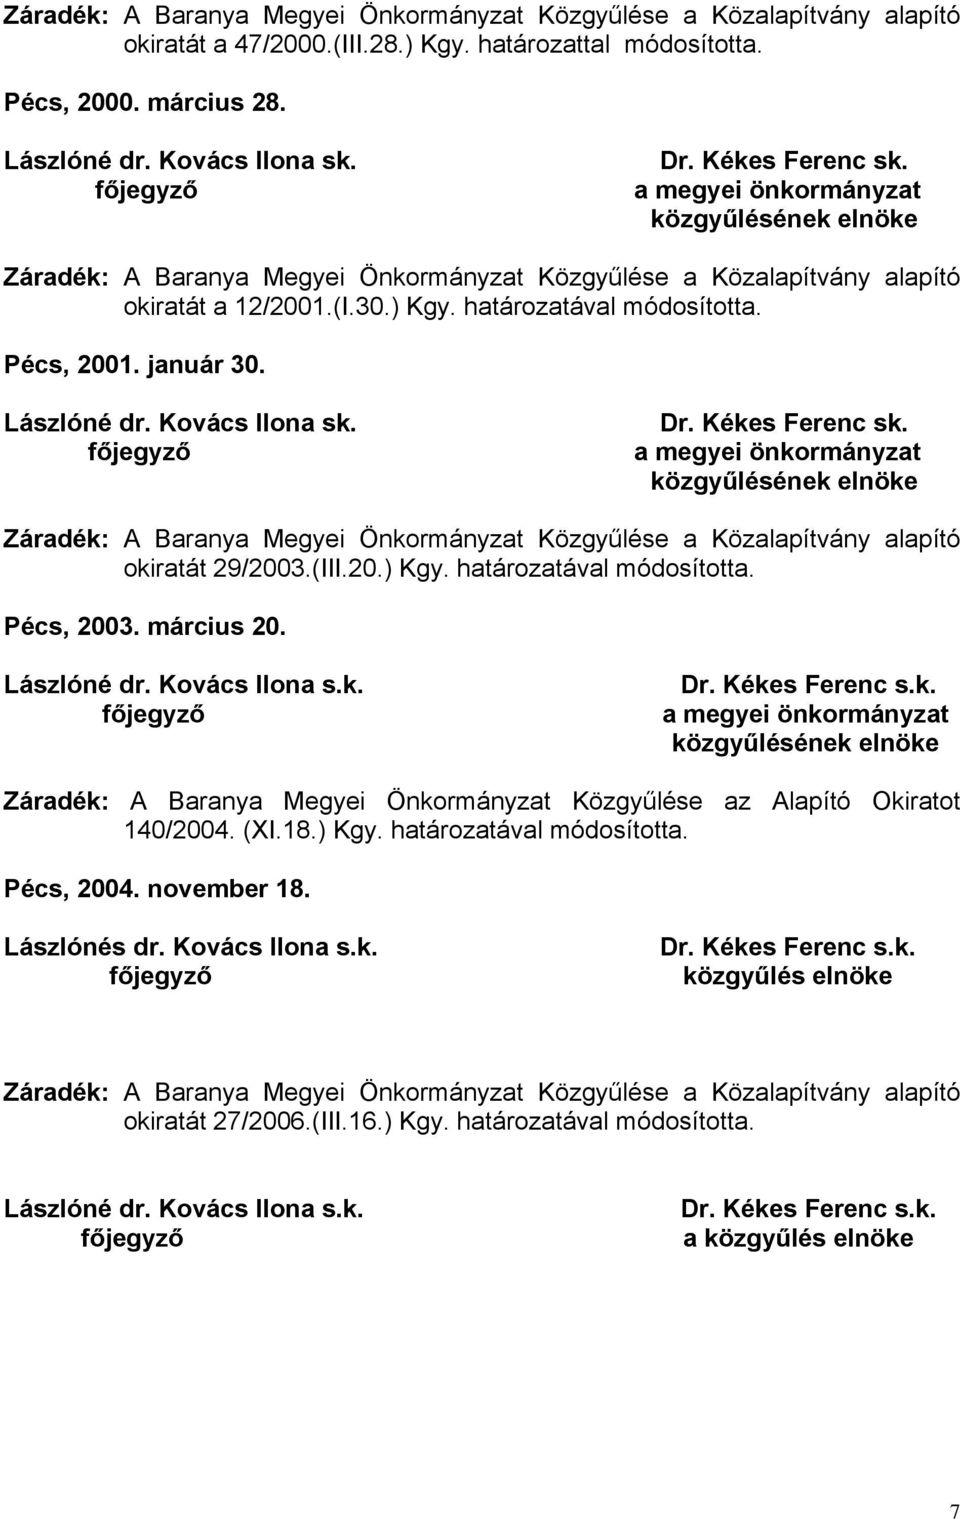 (XI.18.) Kgy. határozatával módosította. Pécs, 2004. november 18. Lászlónés dr. Kovács Ilona s.k. Dr. Kékes Ferenc s.k. közgyűlés elnöke okiratát 27/2006.(III.16.) Kgy. határozatával módosította. Dr. Kékes Ferenc s.k. a közgyűlés elnöke 7